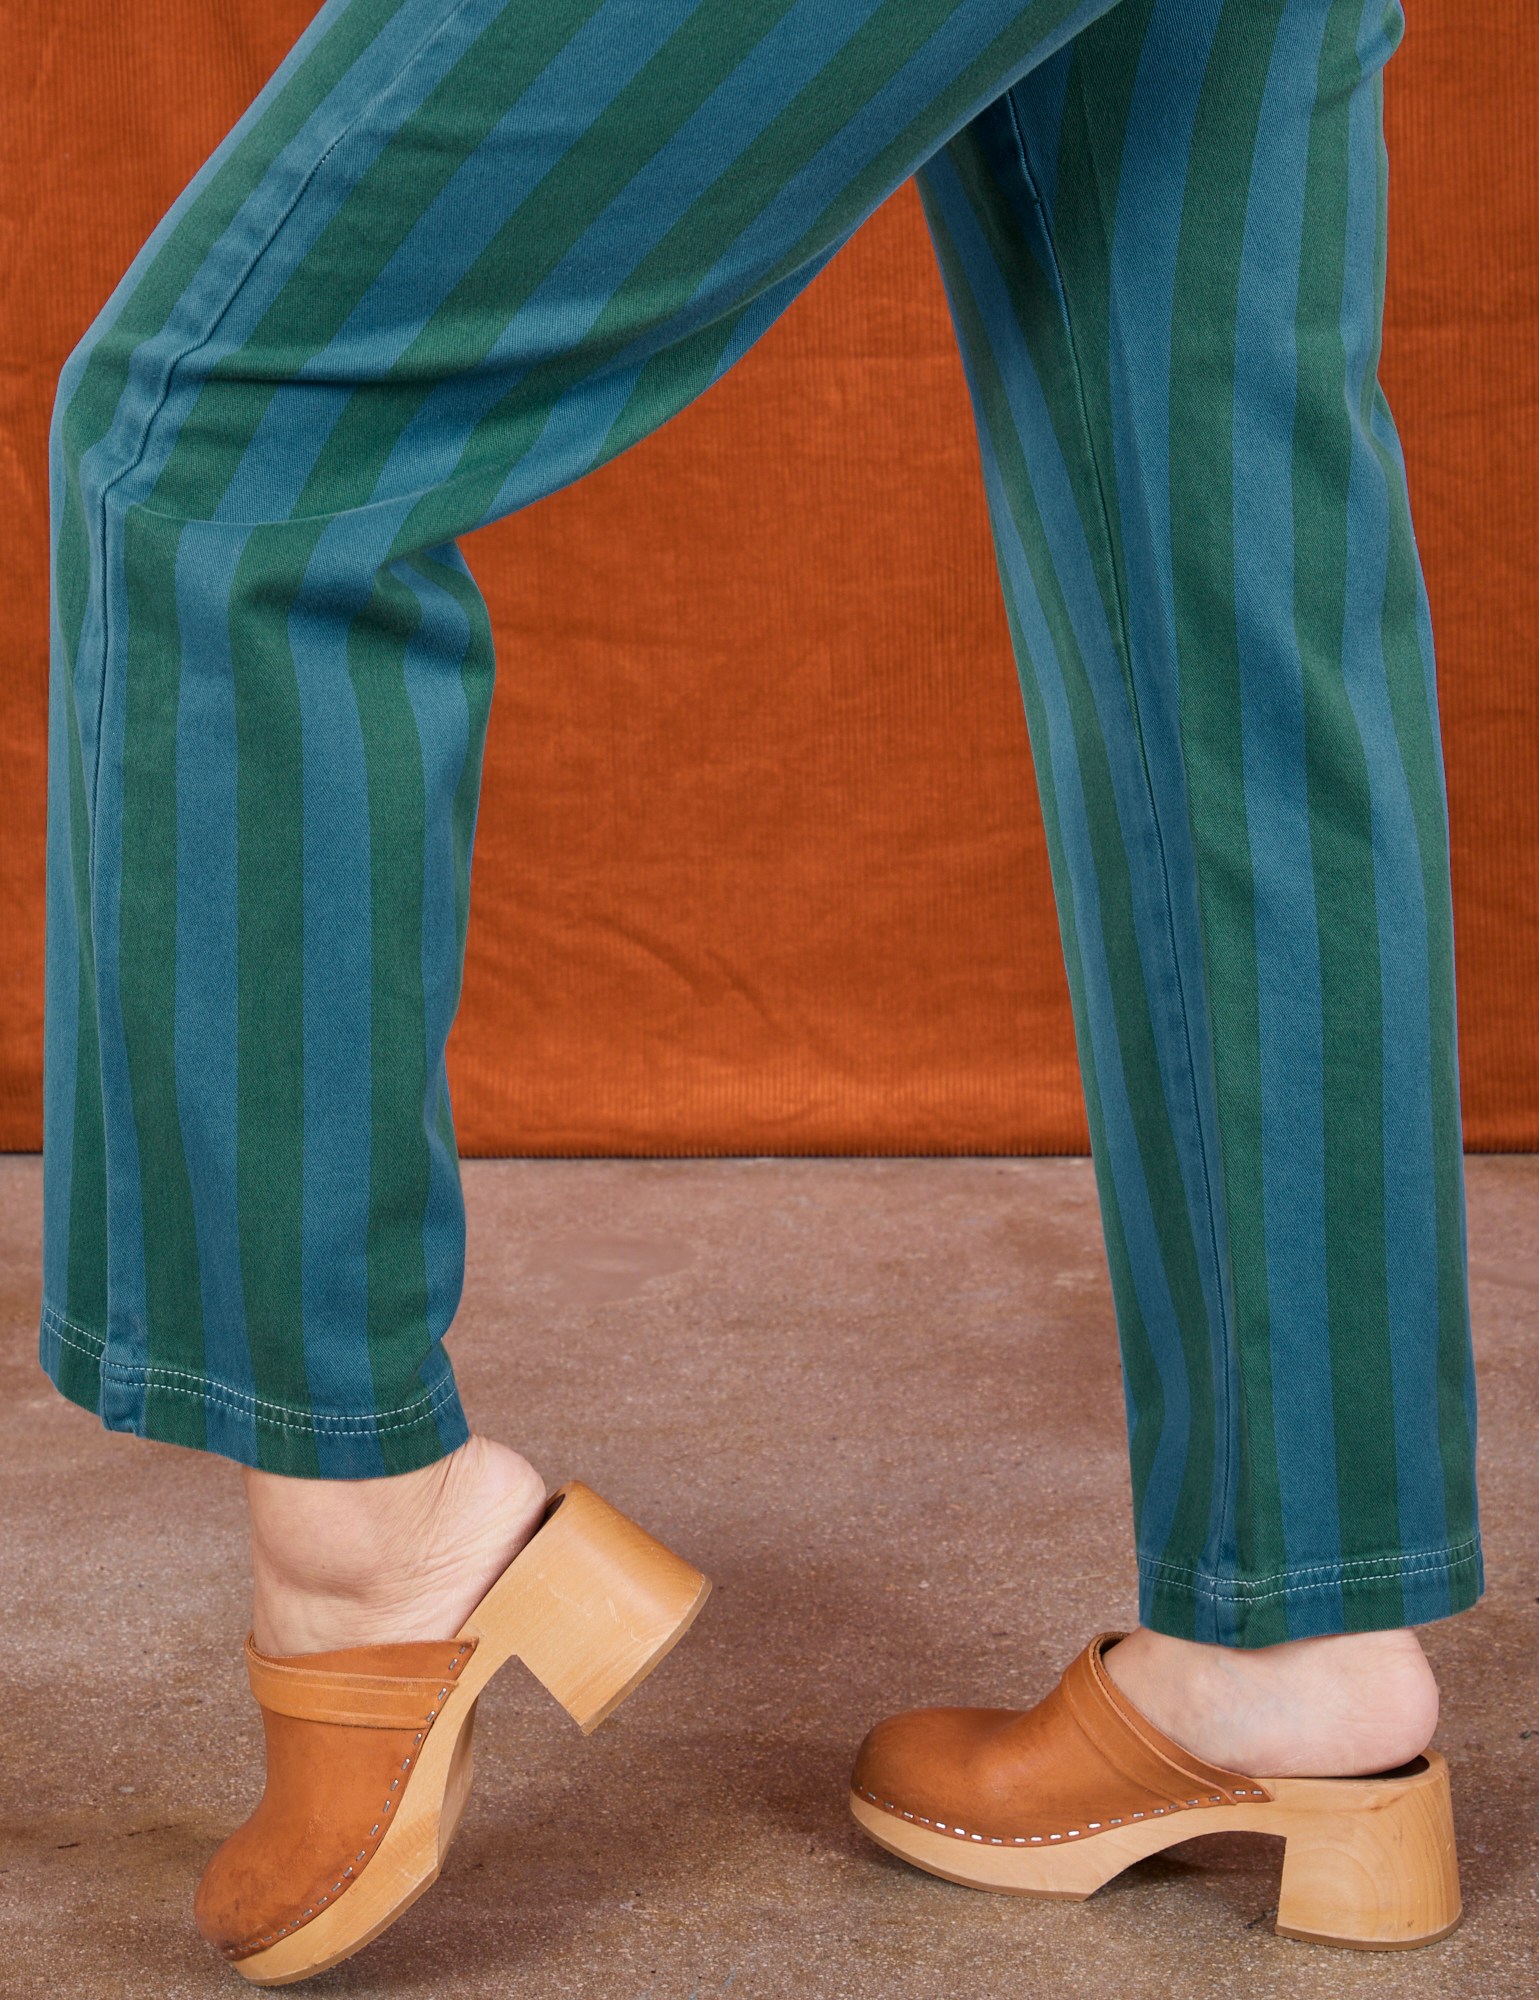 Overdye Stripe Work Pants in Blue/Green pant leg side view on Tiara